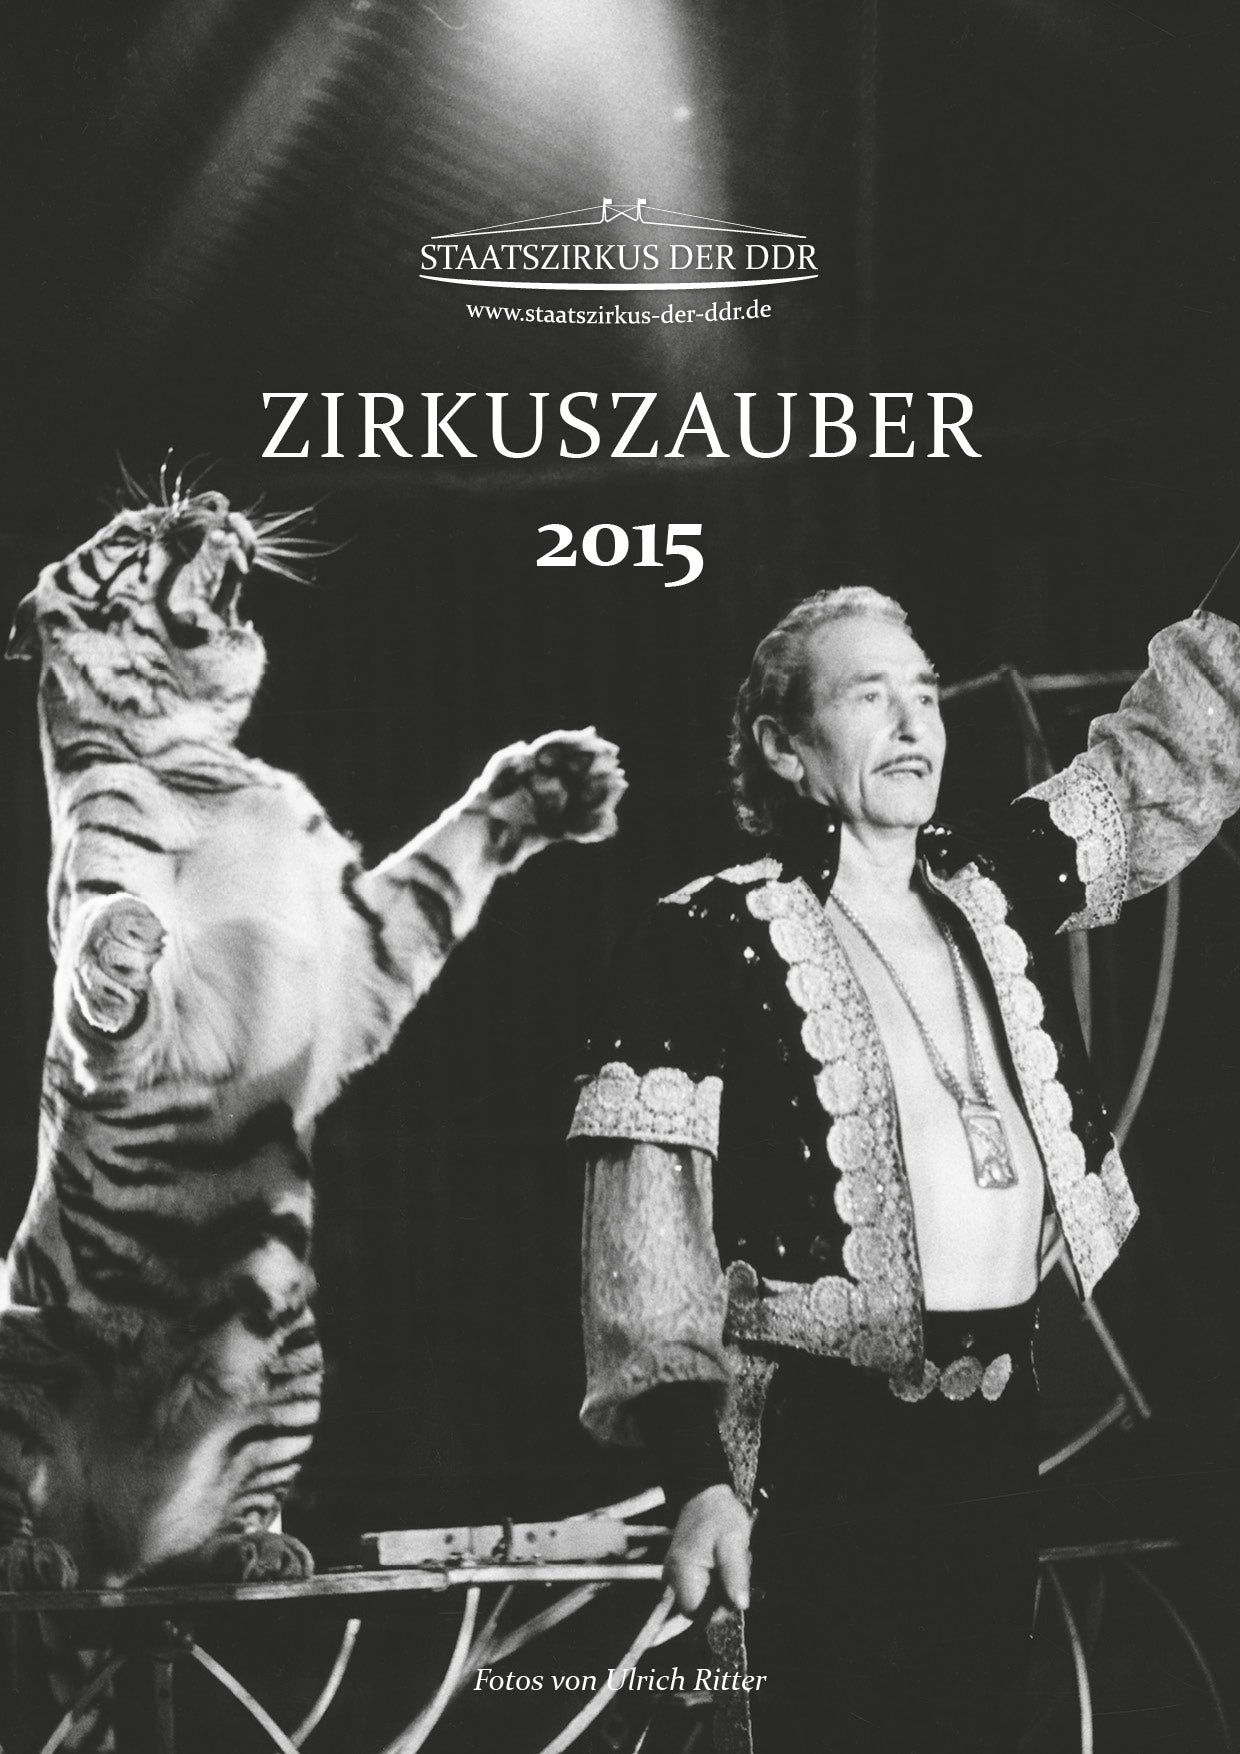 Zirkuskalender Kalender Staatszirkus der DDR 2015 Ulrich Ritter "Zirkuszauber"